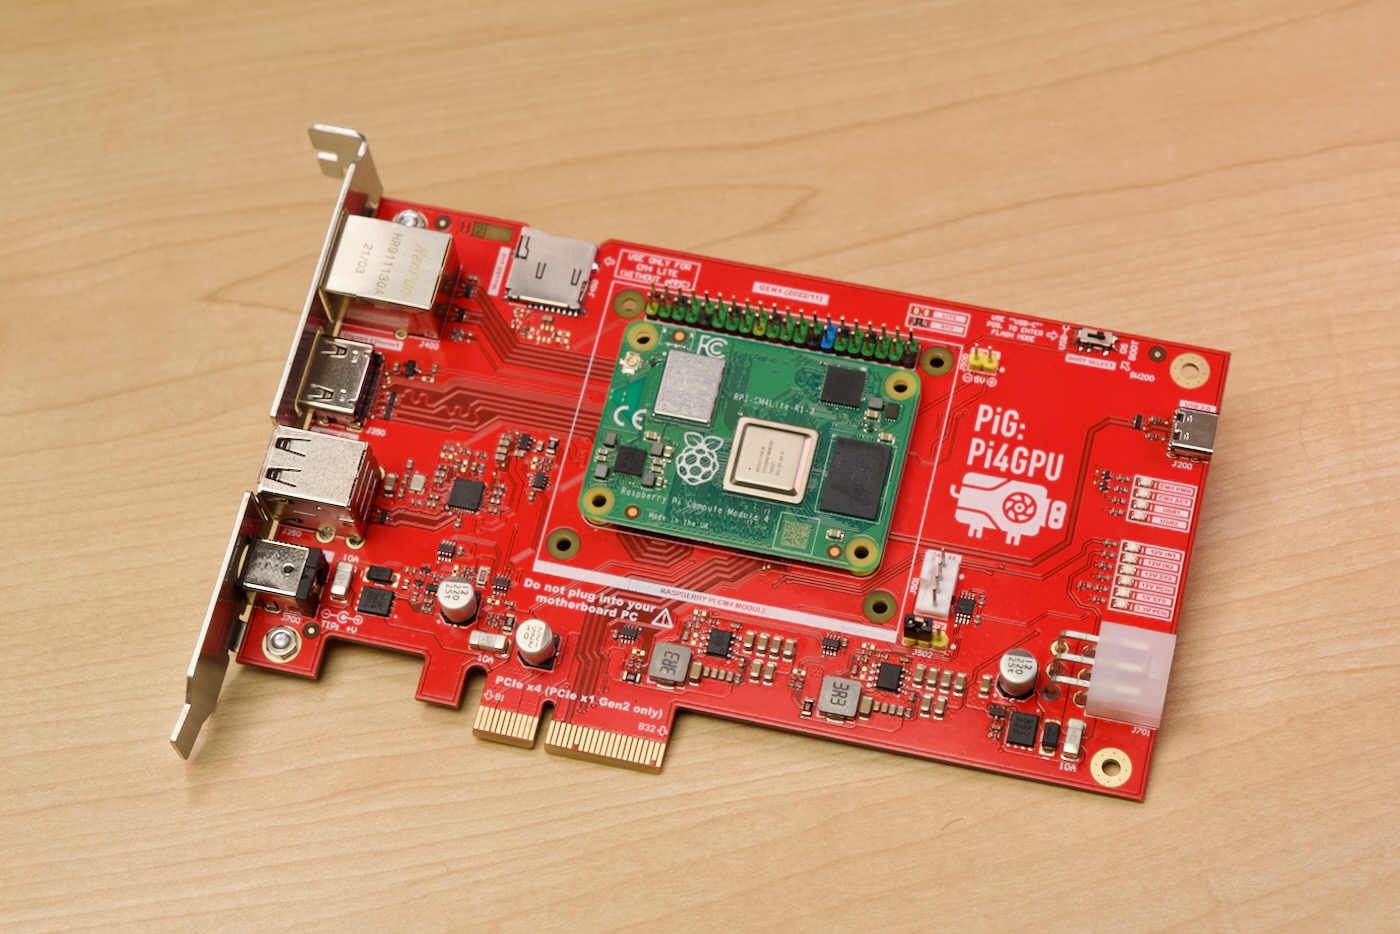 Pi4GPU or PiG card - PCI Express Raspberry Pi CM4 card for GPU testing